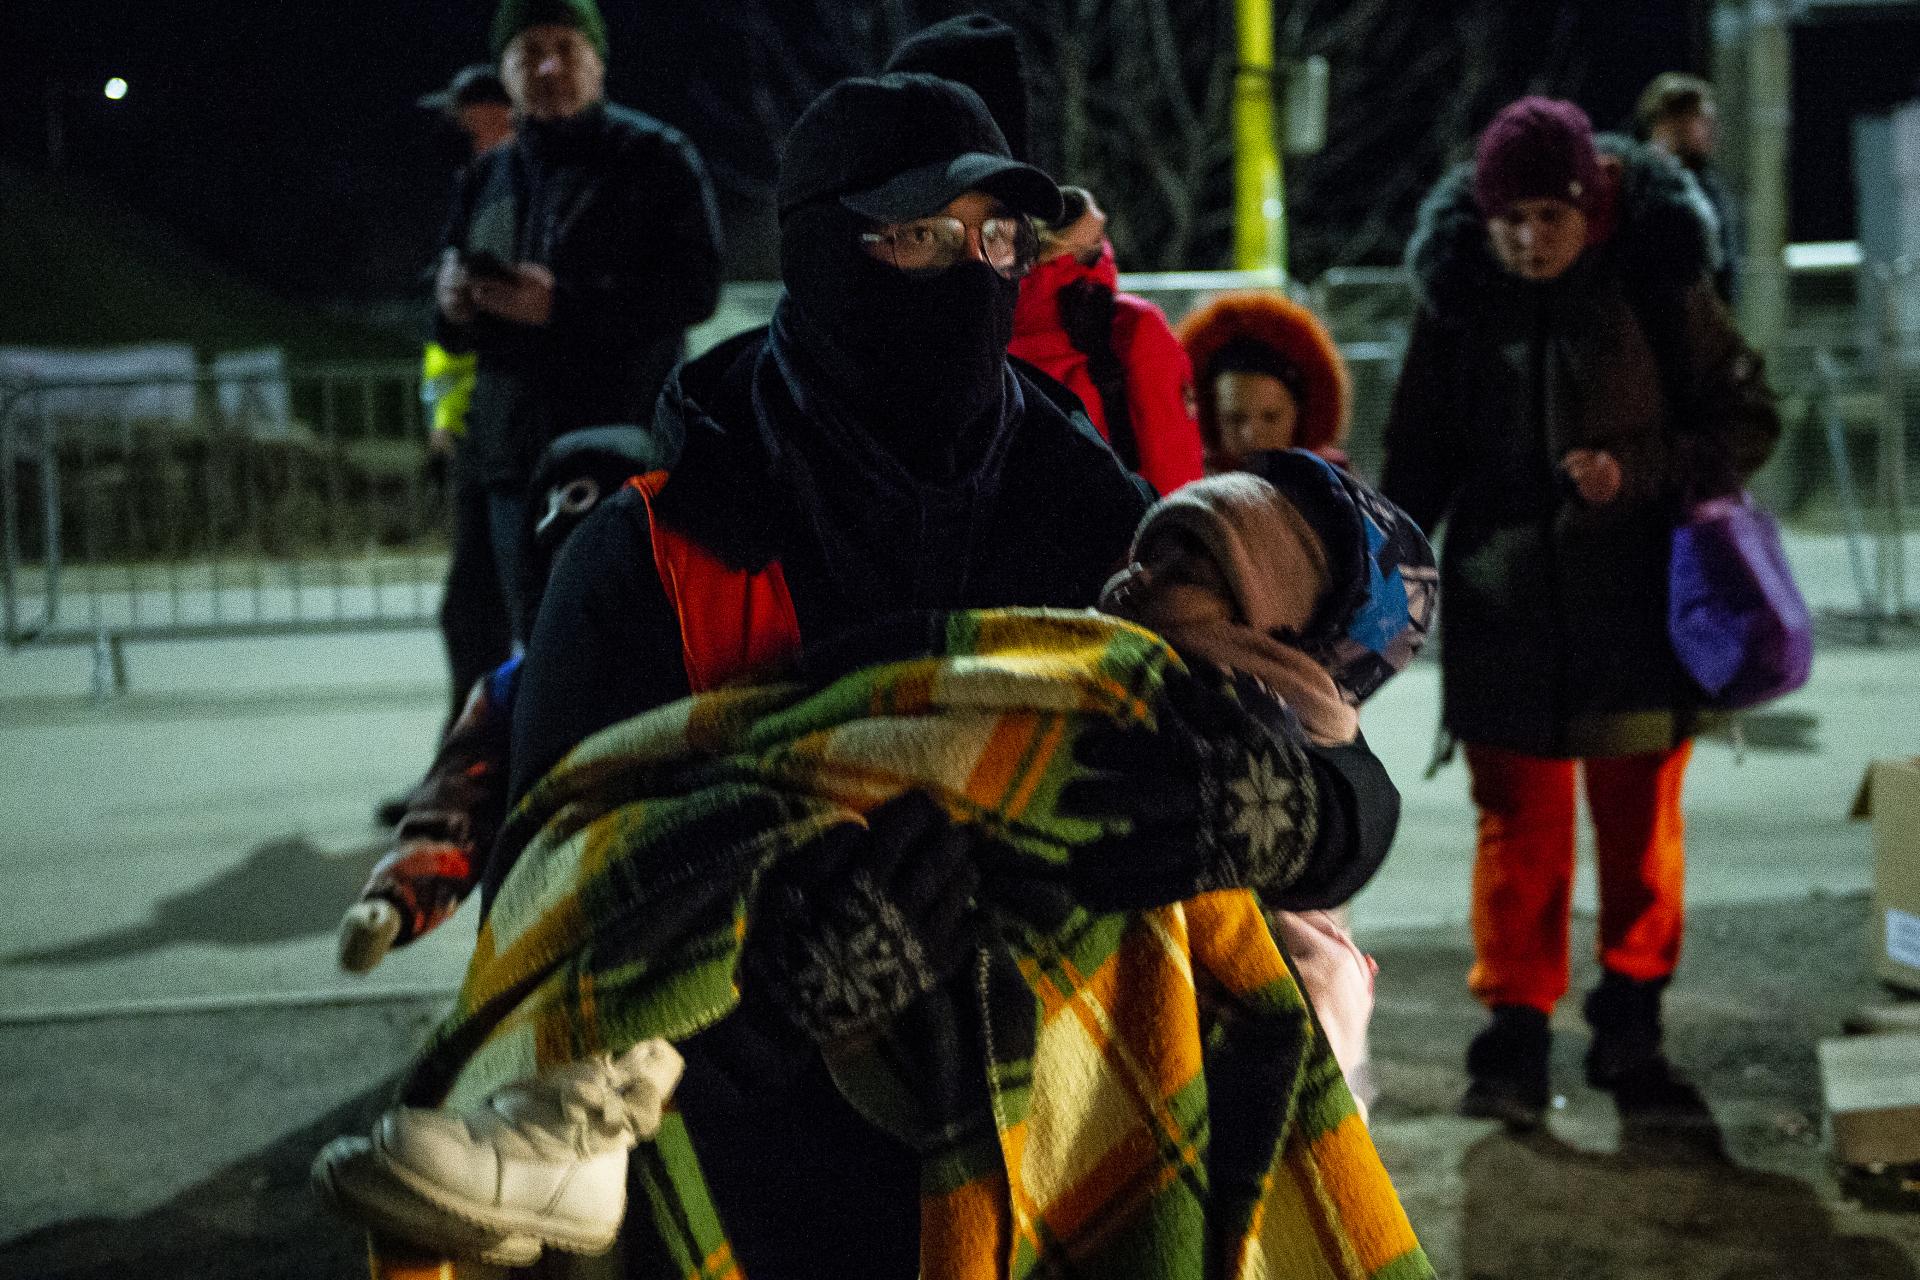 Vojna na Ukrajine mení postoje Slovákov k migračnej politike. Sú ochotnejší pomáhať